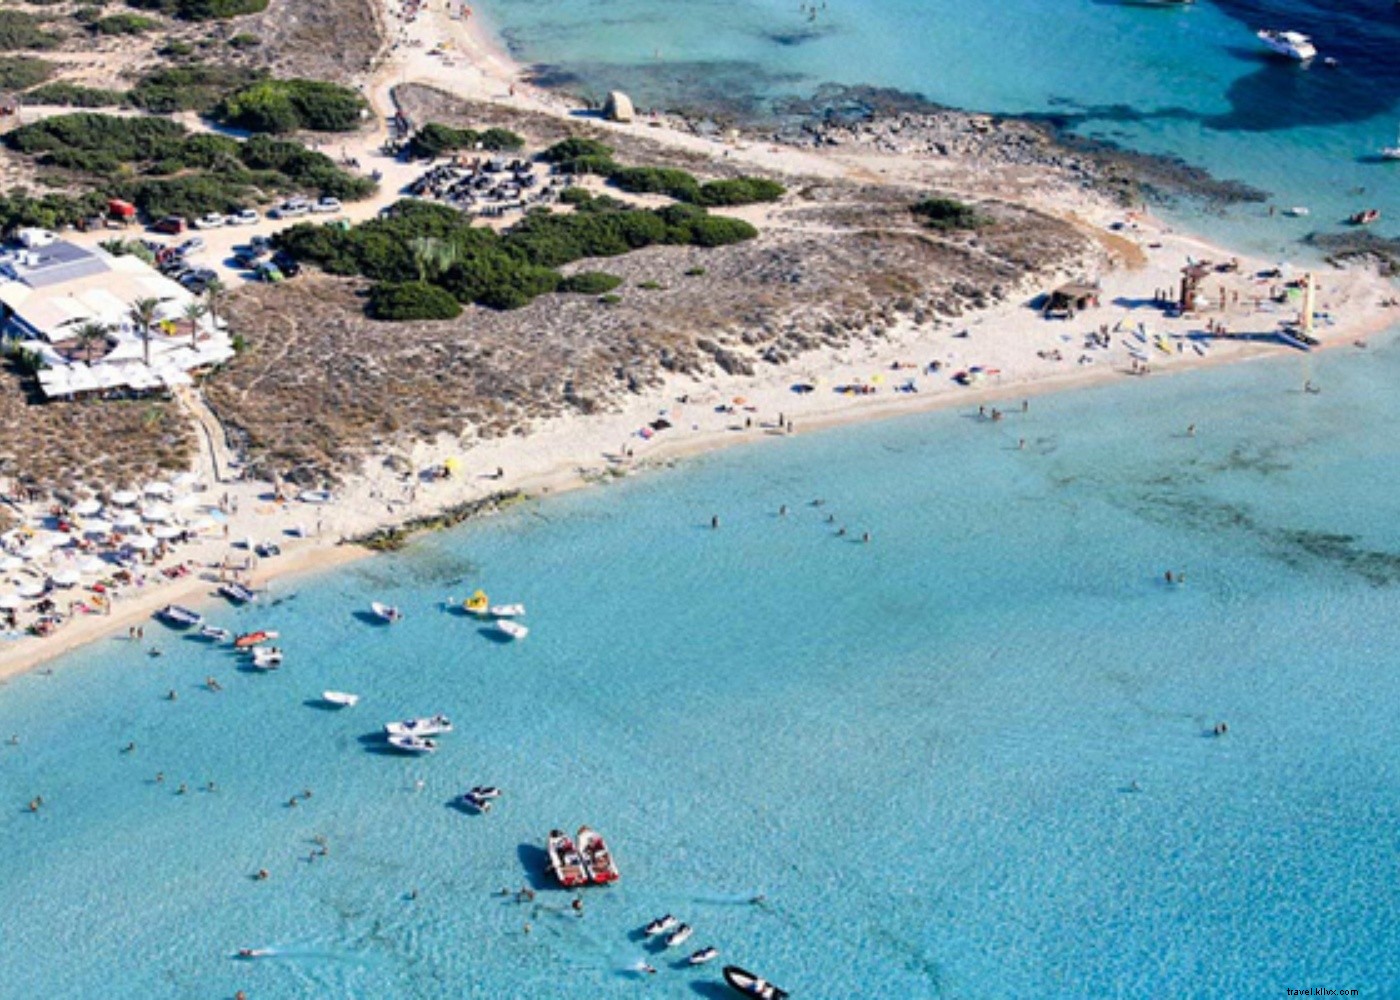 De atardeceres a playas turquesas:la vida en la isla de Formentera 